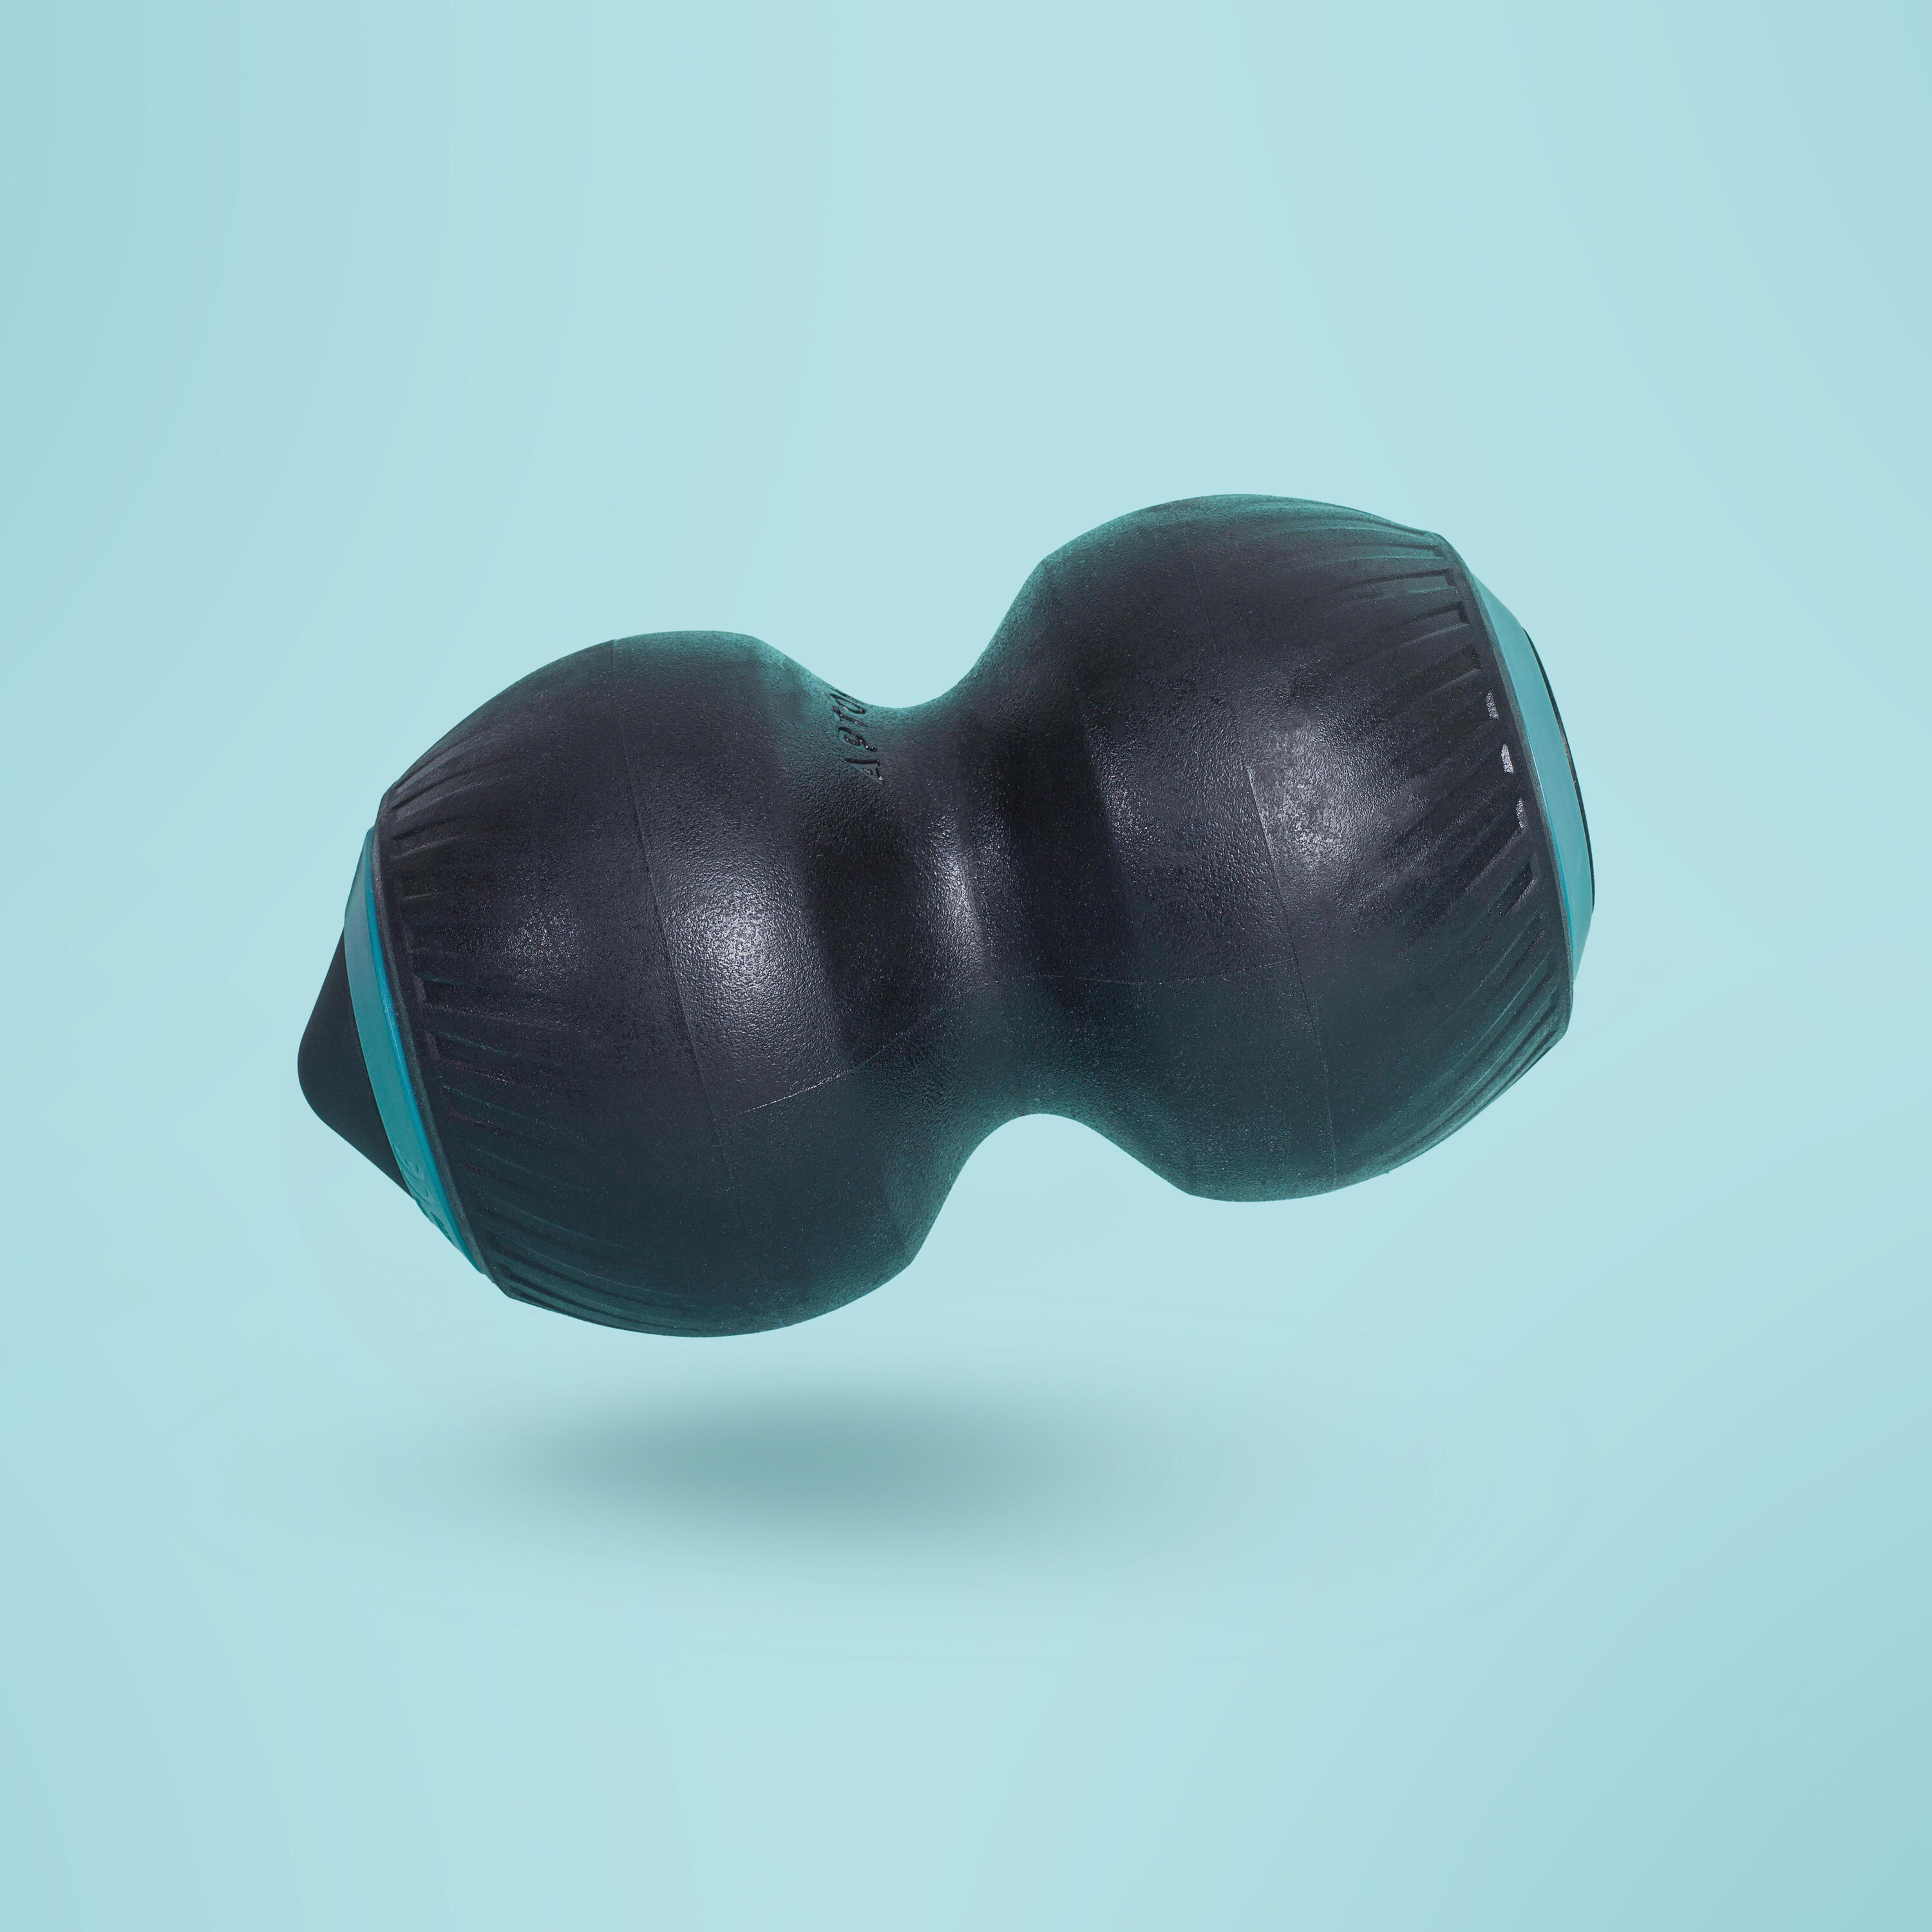 Double vibrating massage ball, mini-vibrating roller 1/4